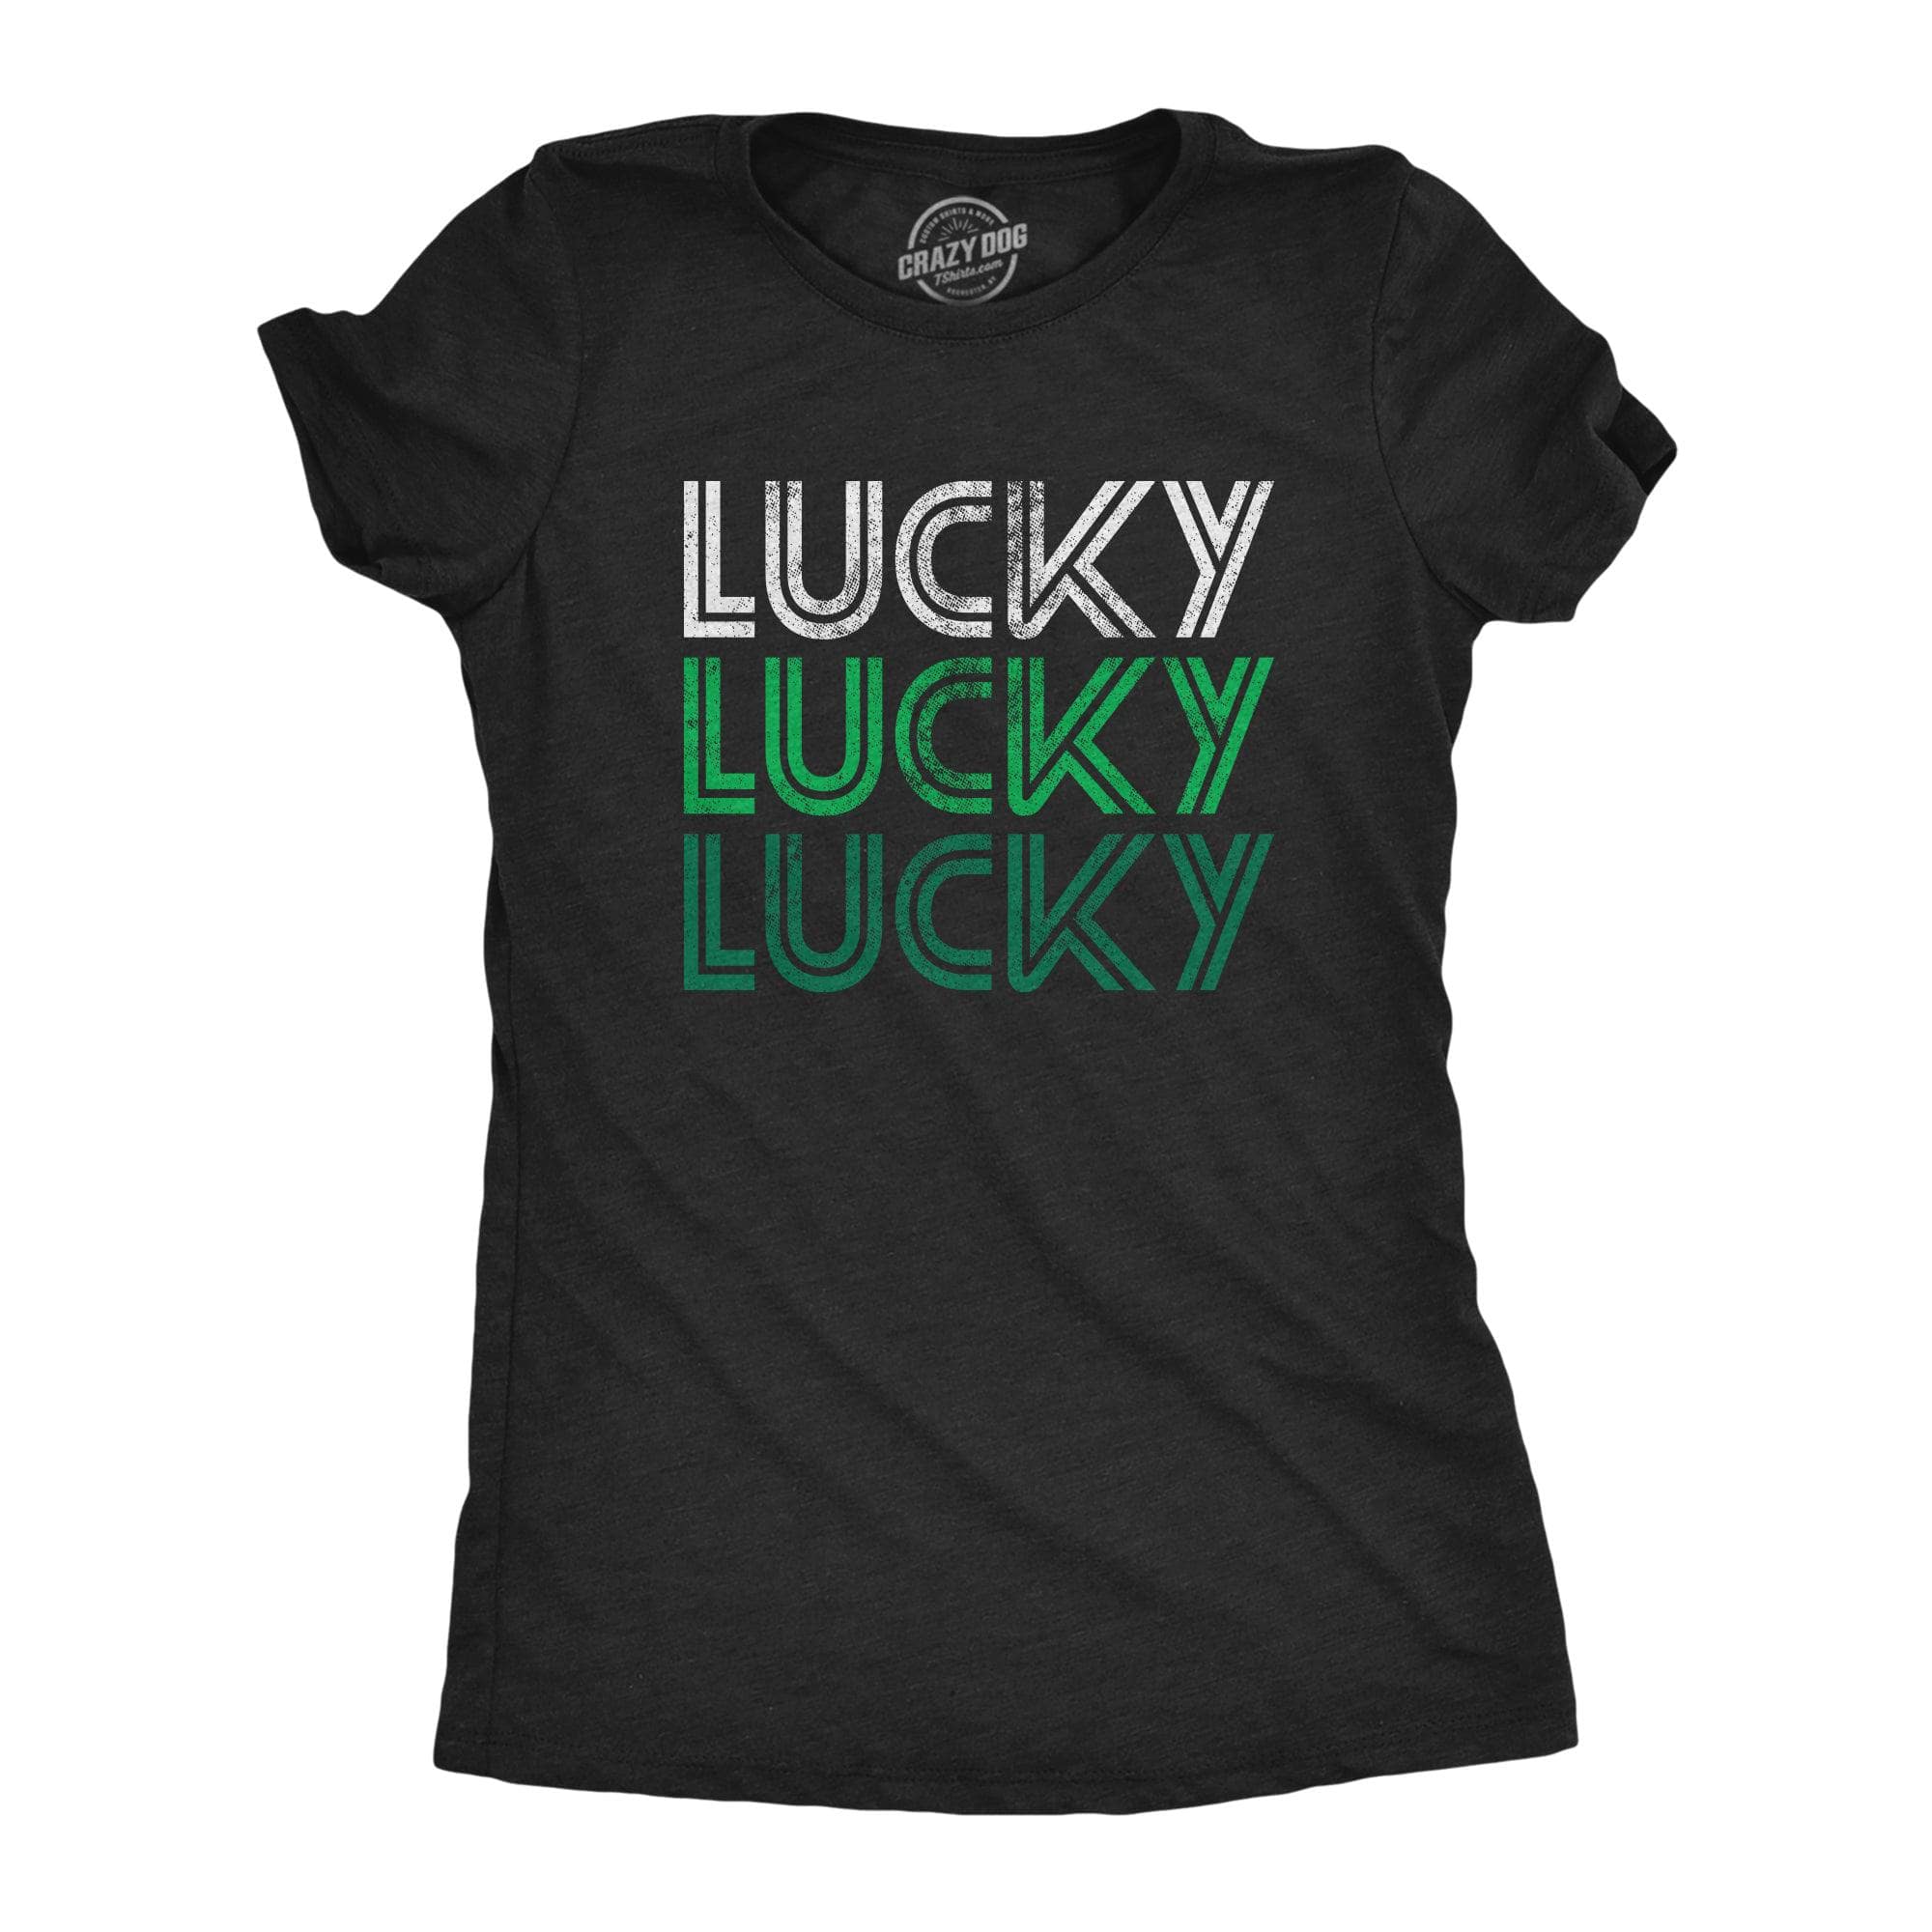 Lucky Lucky Lucky Women's Tshirt  -  Crazy Dog T-Shirts